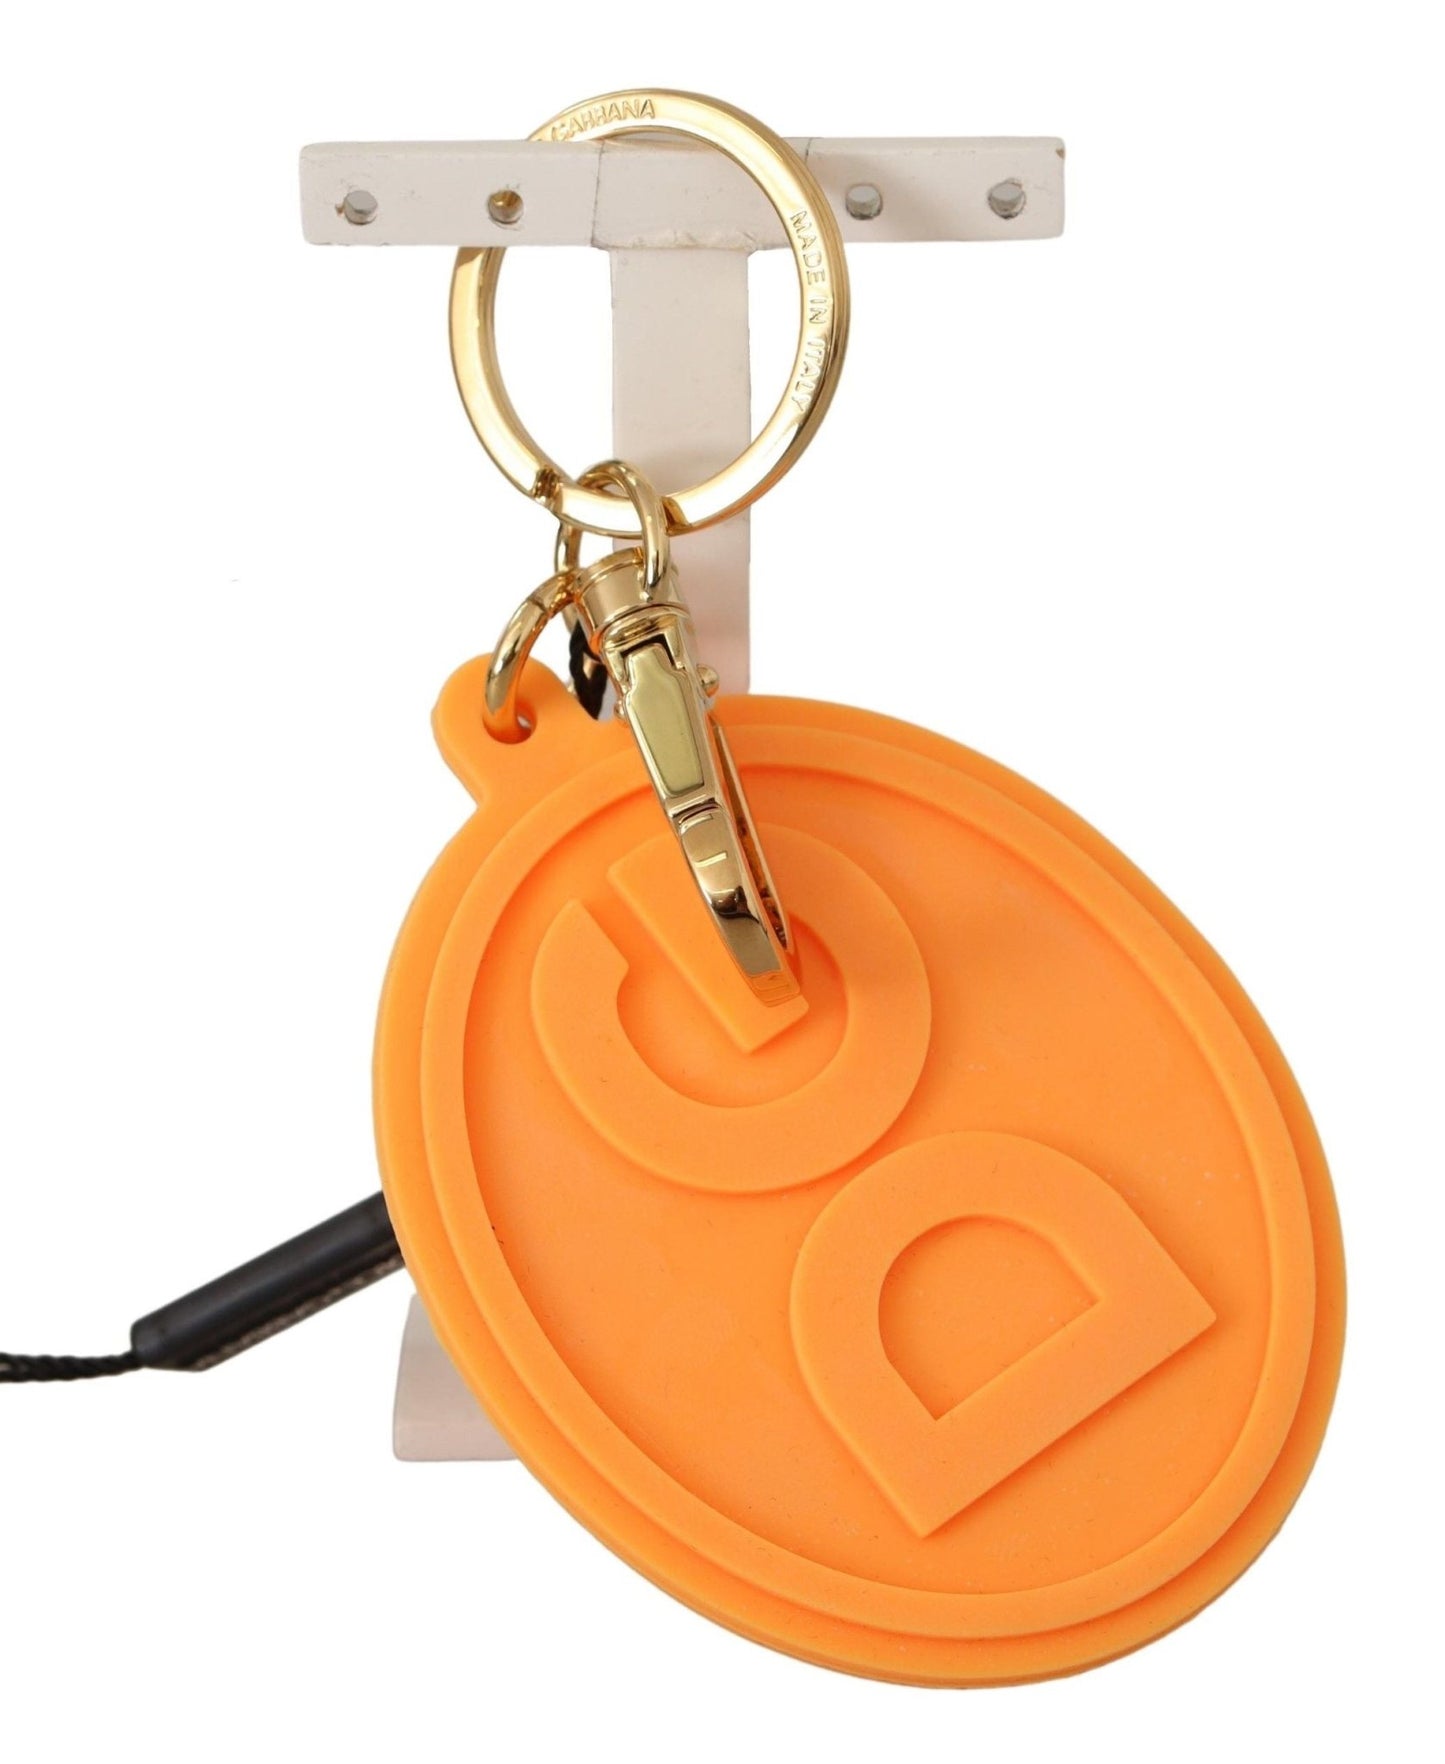 Dolce & Gabbana Orange Rubber DG Logo Gold Brass Metal Keychain